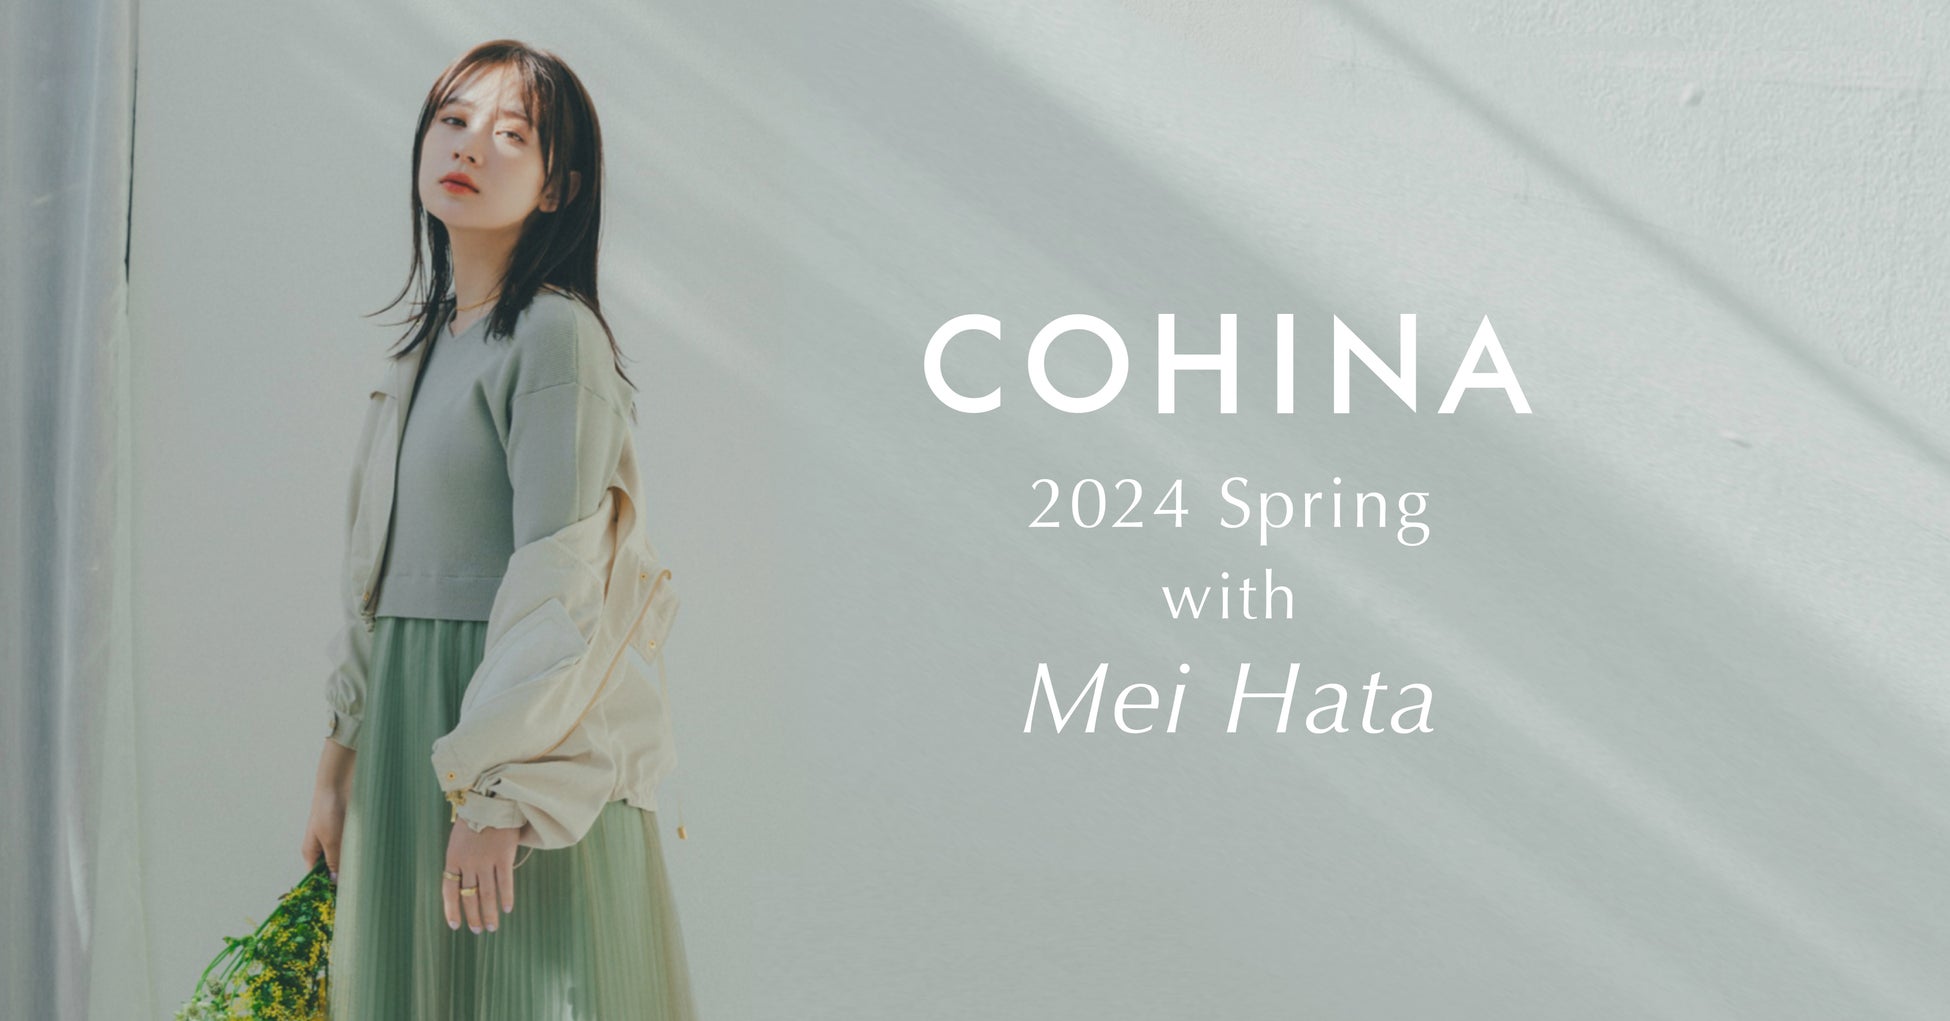 小柄女性向けブランド「COHINA」が、女優の畑芽育を起用した2024 Spring Collectionを発表